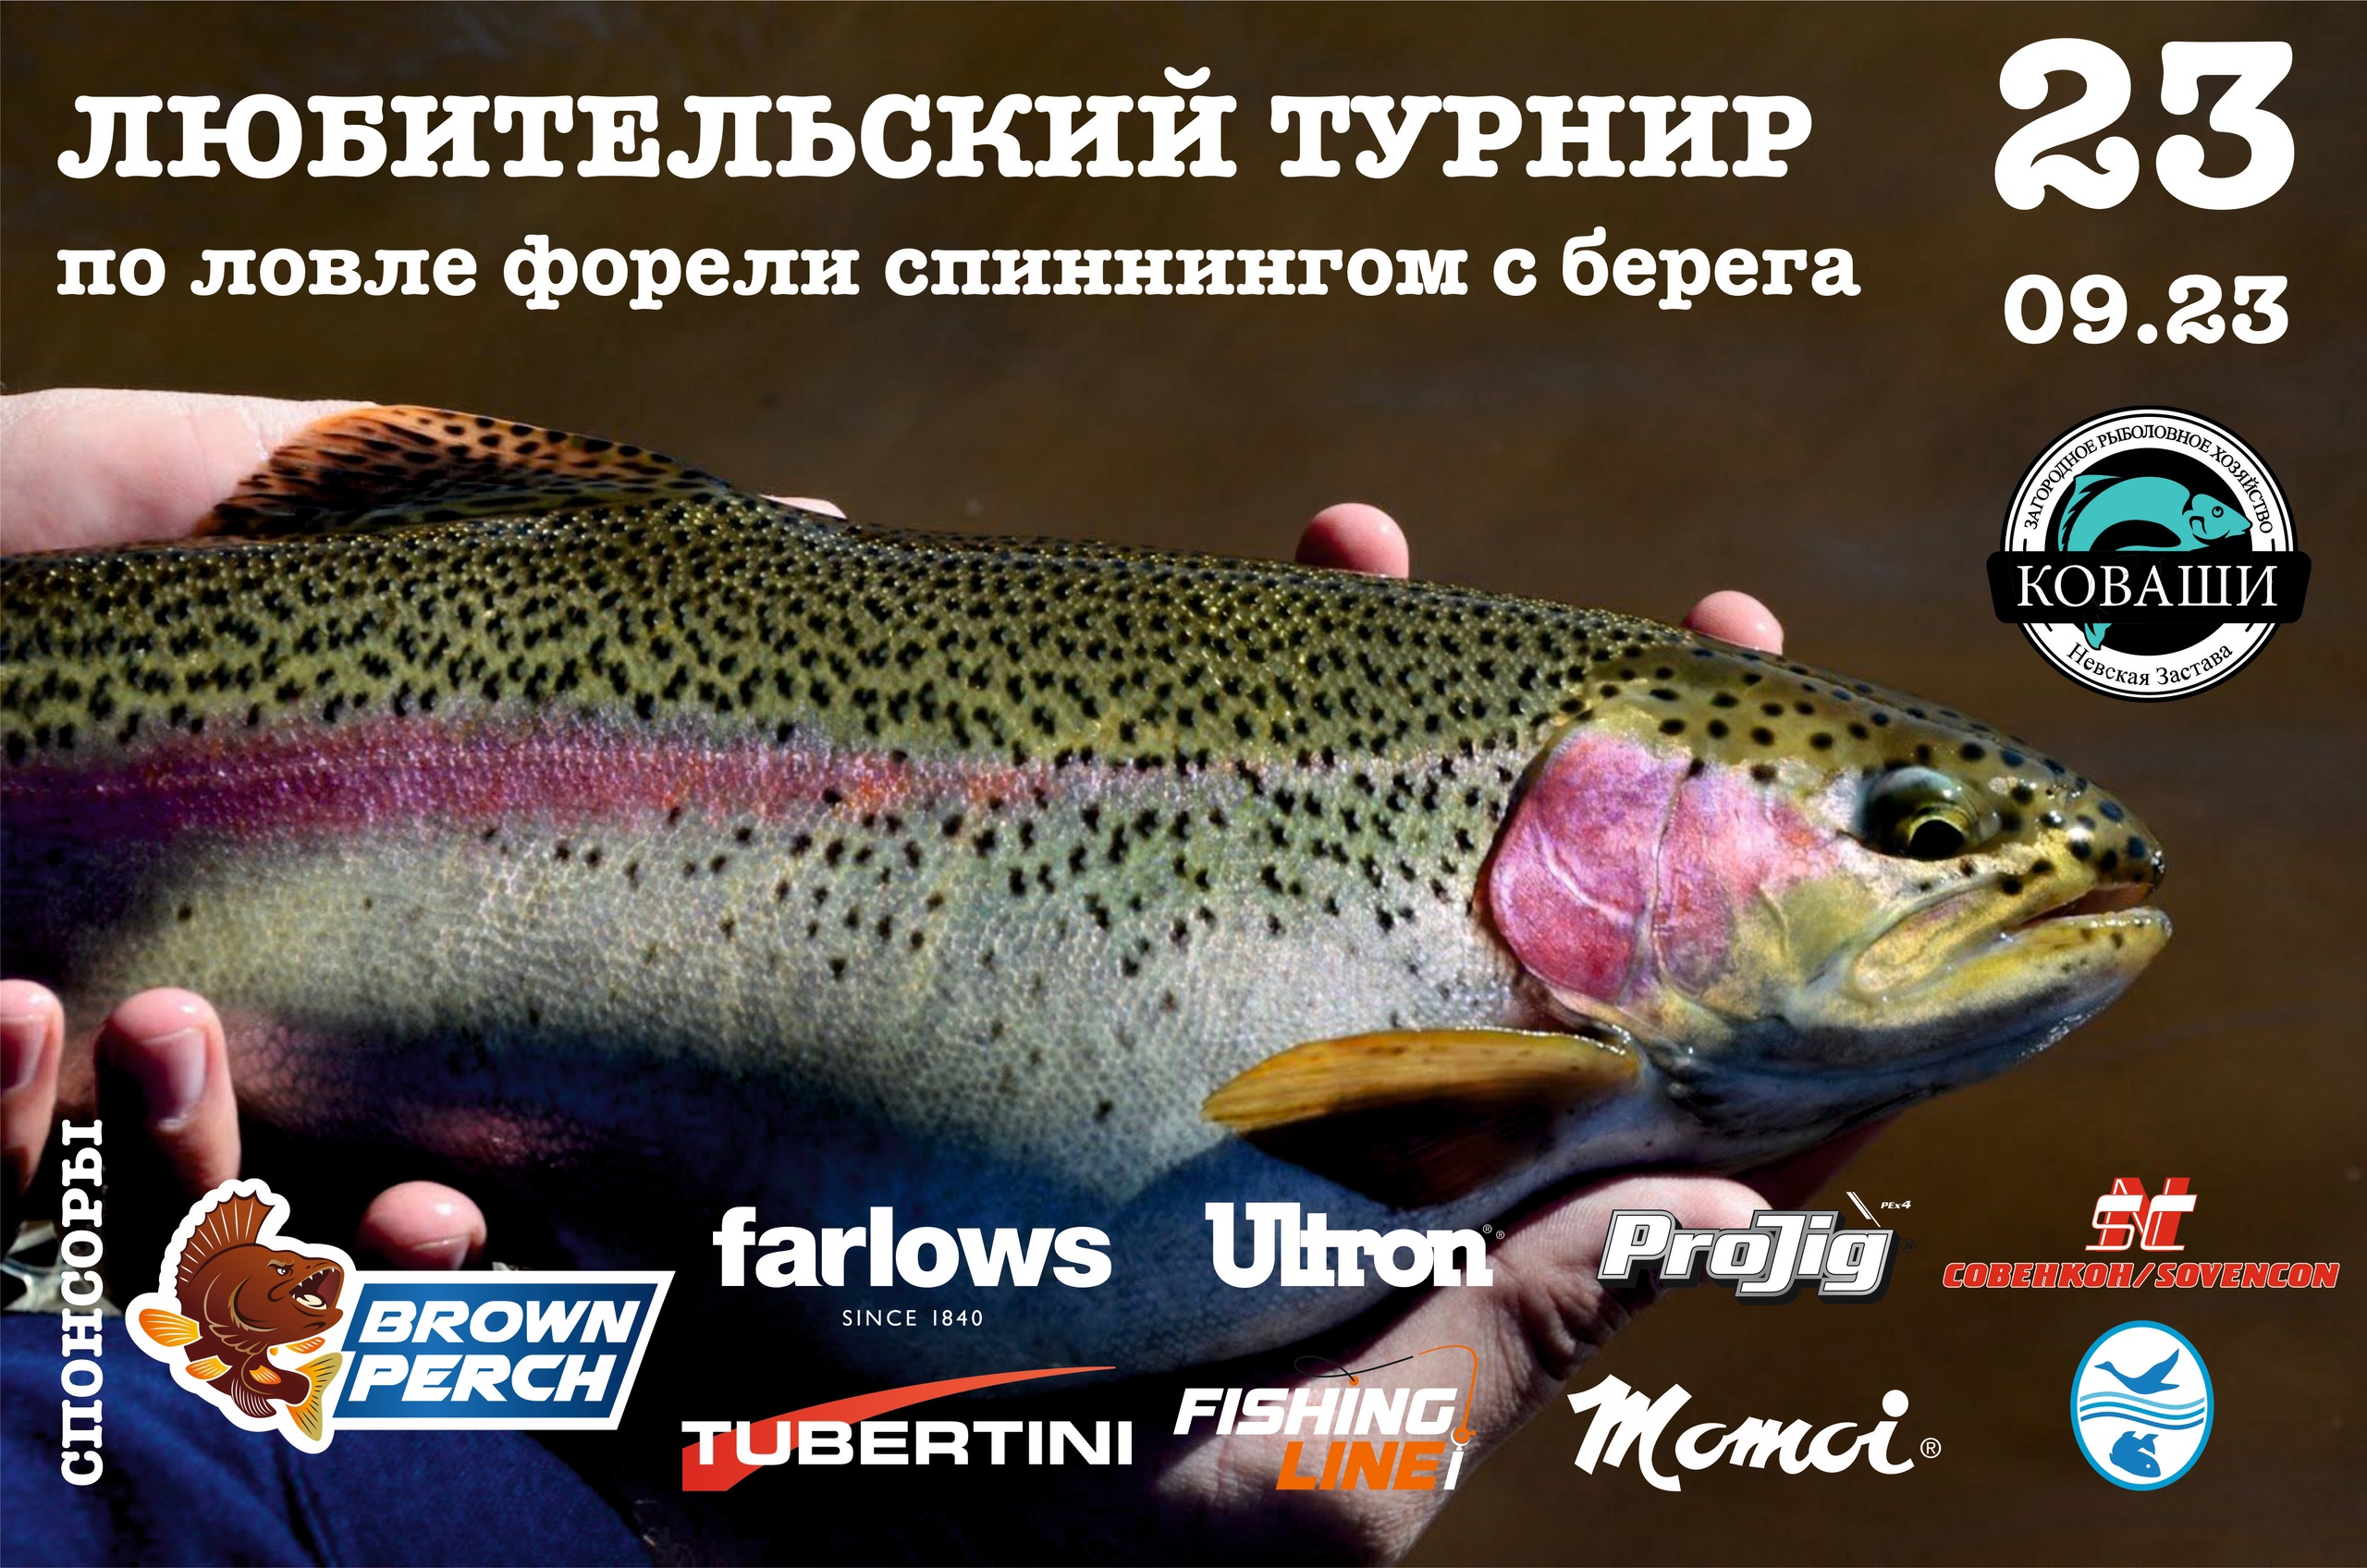 Начинается регистрация на любительский турнир в ЗРХ "Рыбалка в Коваши"